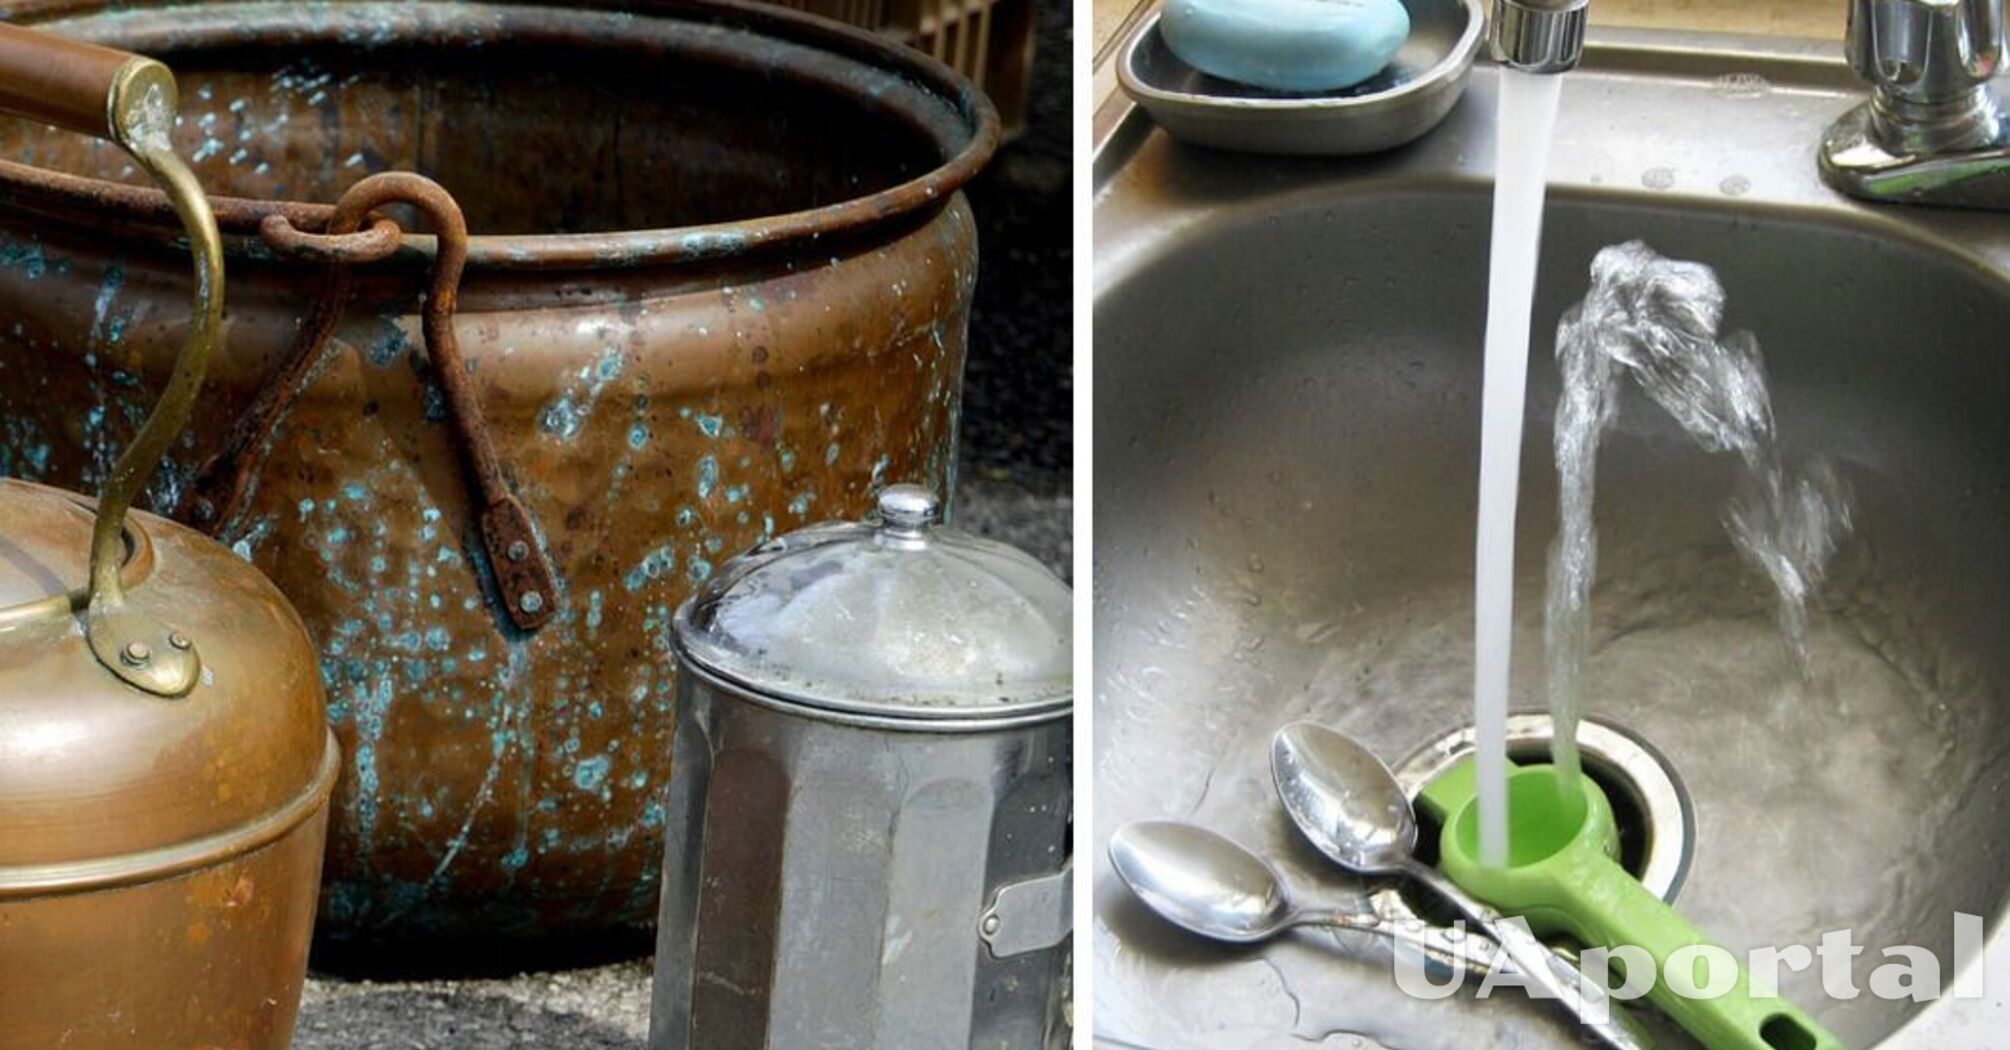 Специалисты рассказали о двух методах мытья посуды из нержавейки, которые не оставляют царапин